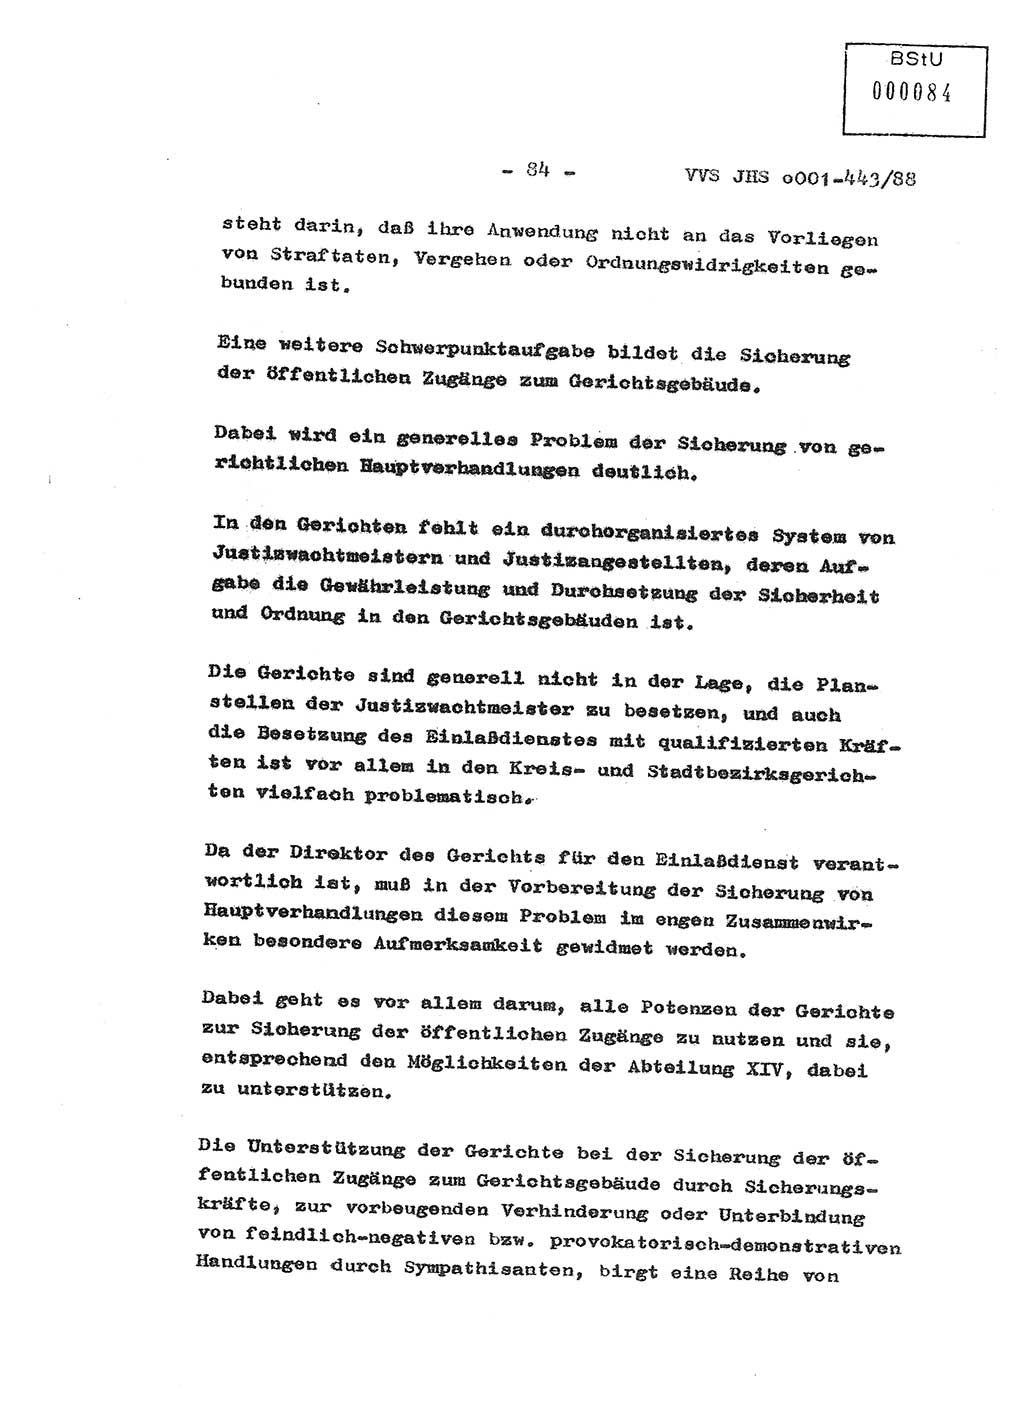 Diplomarbeit Hauptmann Michael Rast (Abt. ⅩⅣ), Major Bernd Rahaus (Abt. ⅩⅣ), Ministerium für Staatssicherheit (MfS) [Deutsche Demokratische Republik (DDR)], Juristische Hochschule (JHS), Vertrauliche Verschlußsache (VVS) o001-443/88, Potsdam 1988, Seite 84 (Dipl.-Arb. MfS DDR JHS VVS o001-443/88 1988, S. 84)